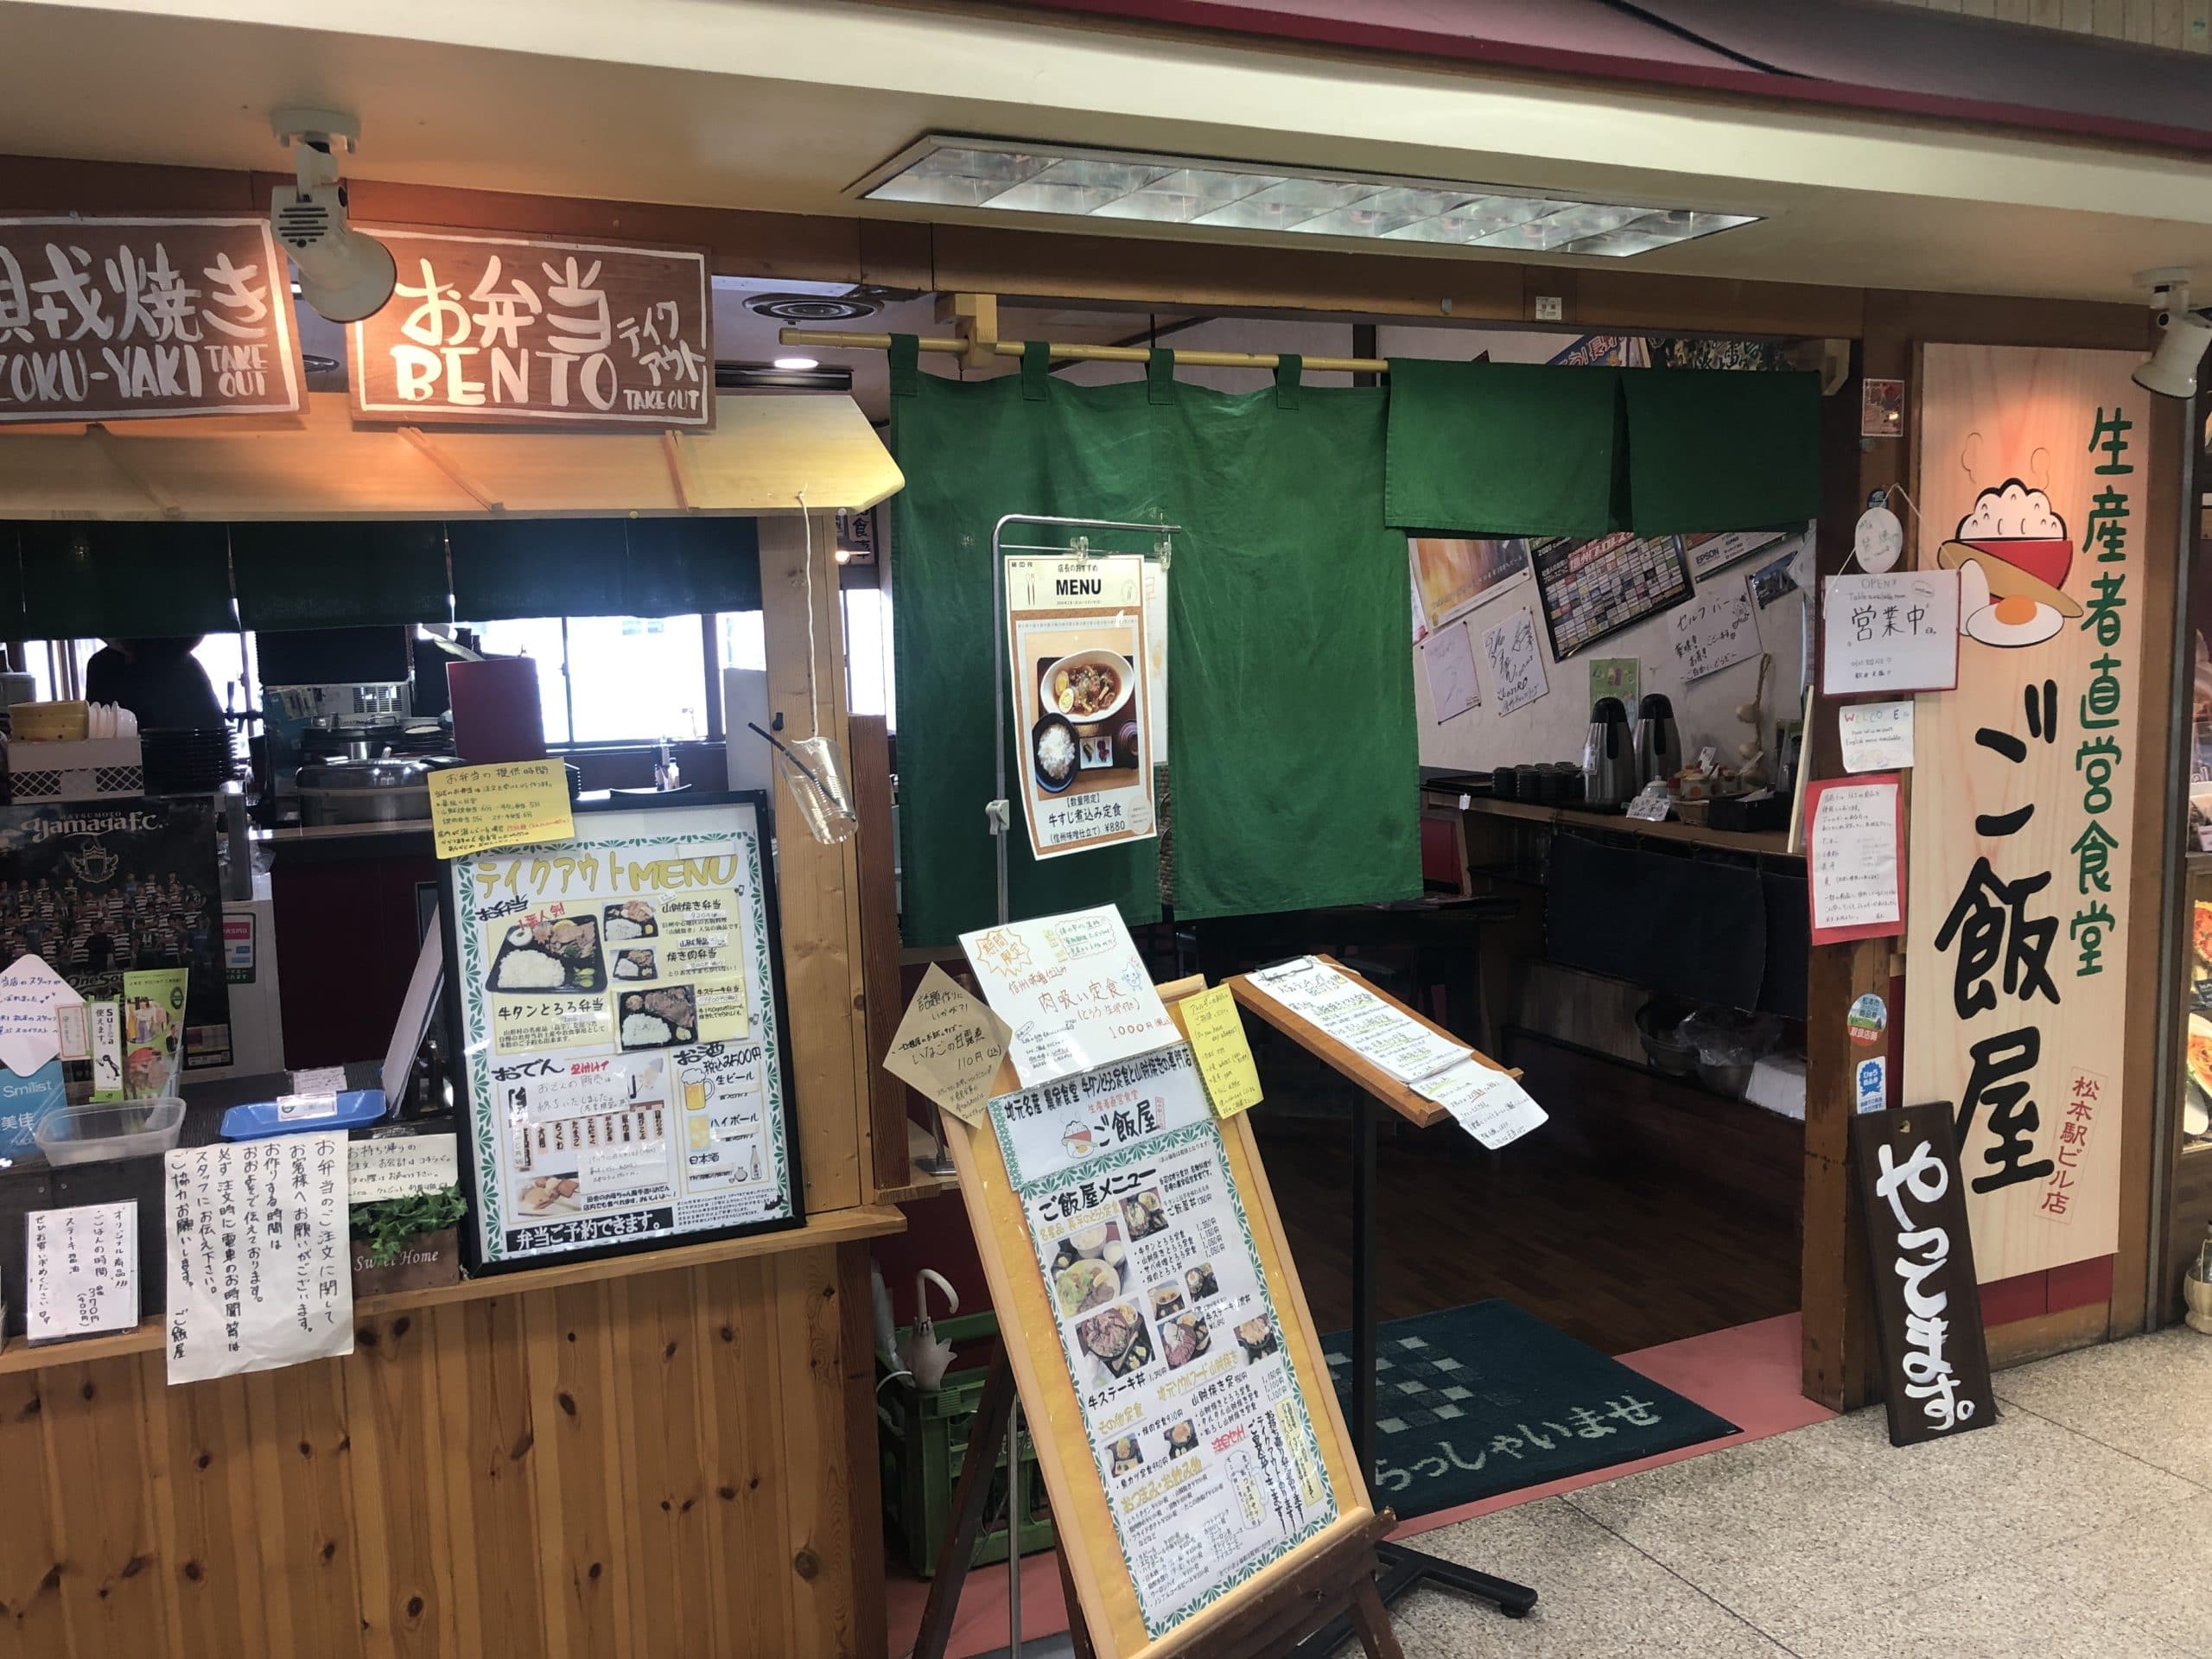 【松本市】生産者直営食堂「ご飯屋」松本駅ビル店のメニューはどれもハズレなしのガチだった件